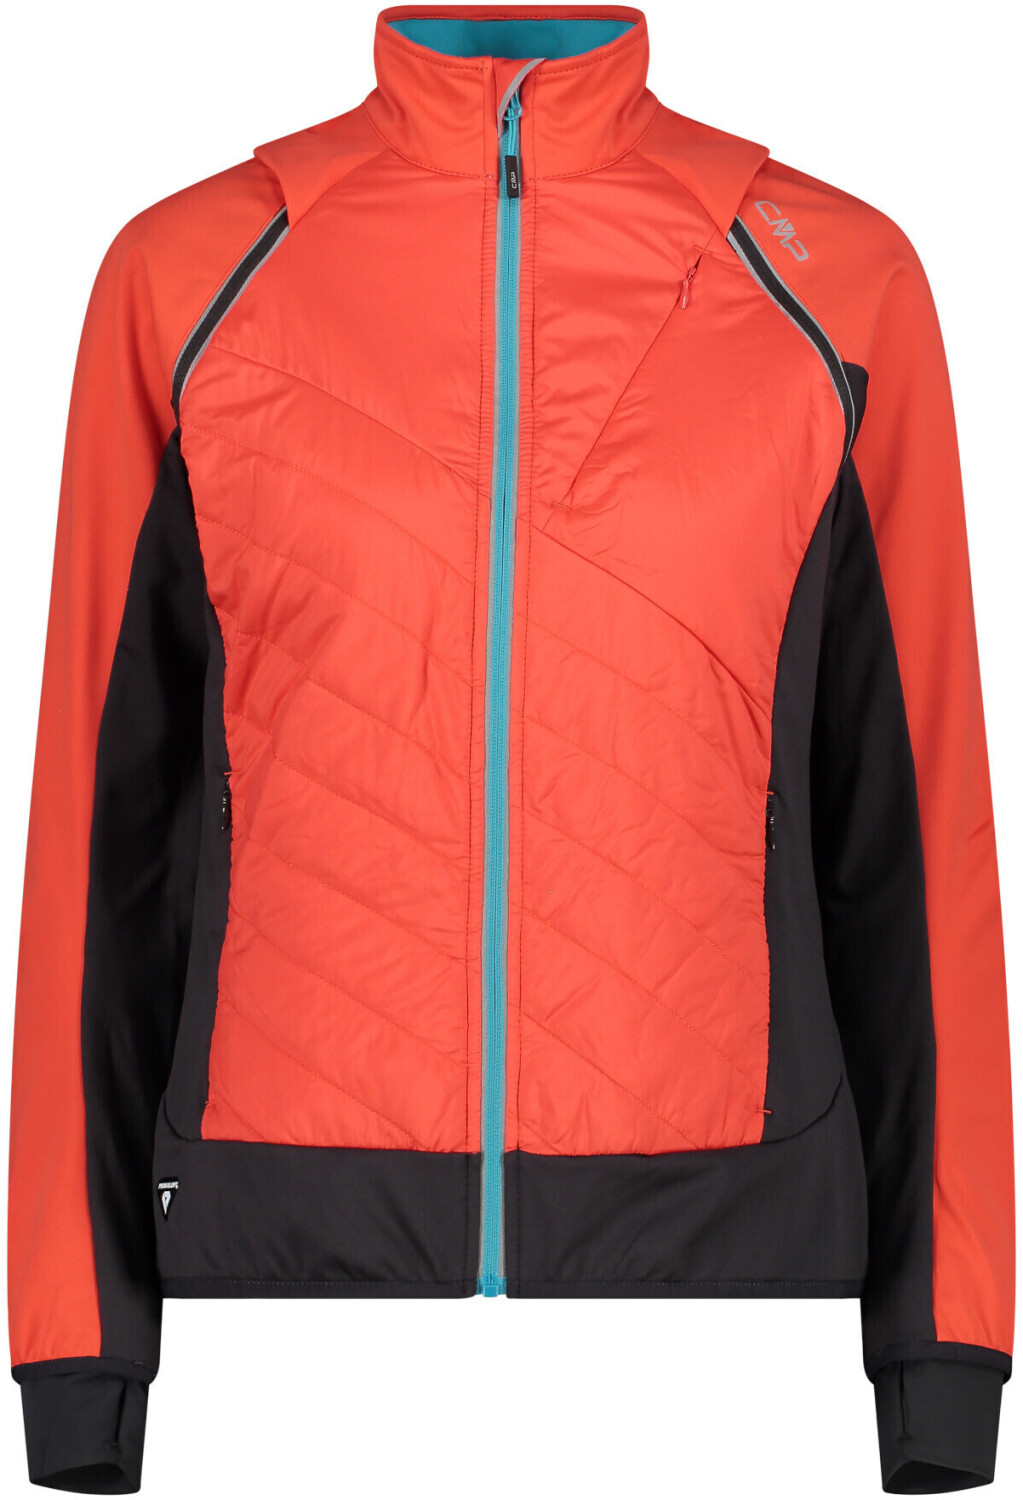 (30A2276) with precios idealo Removable campari Sleeves Women\'s Jacket CMP en € Hybrid | 69,00 desde Compara